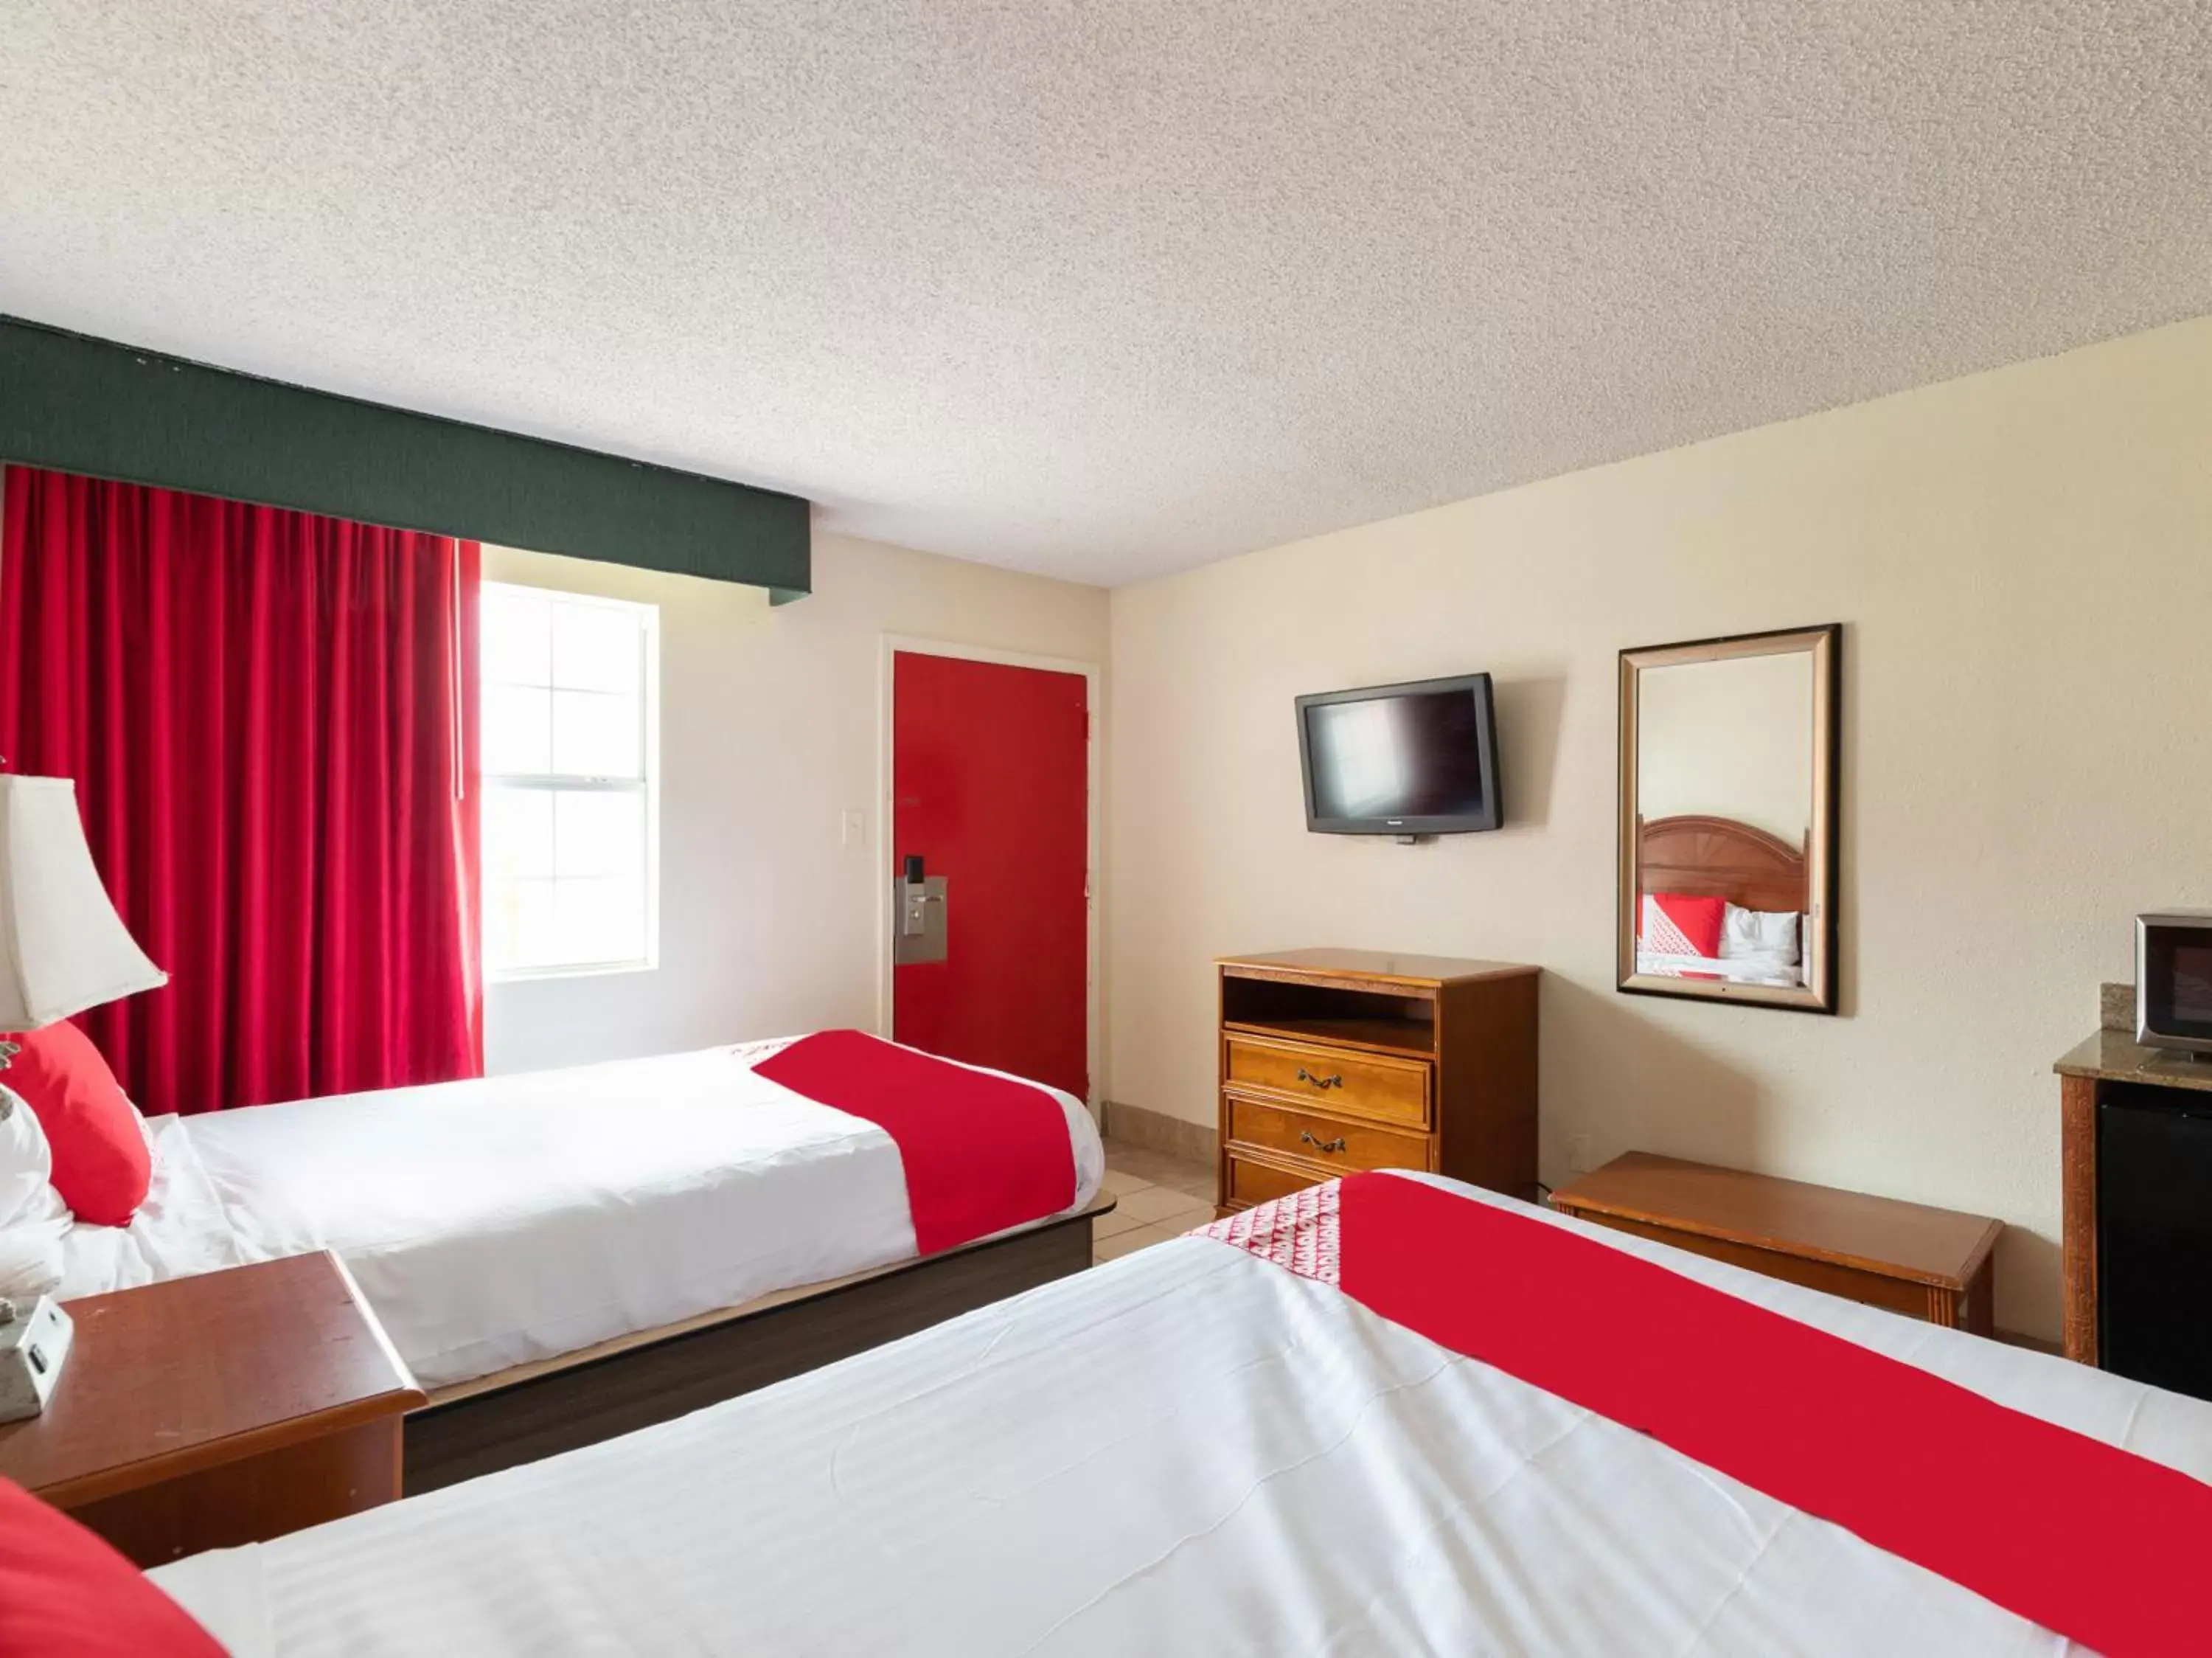 Bedroom, Bed in OYO Hotel San Antonio Lackland near Seaworld